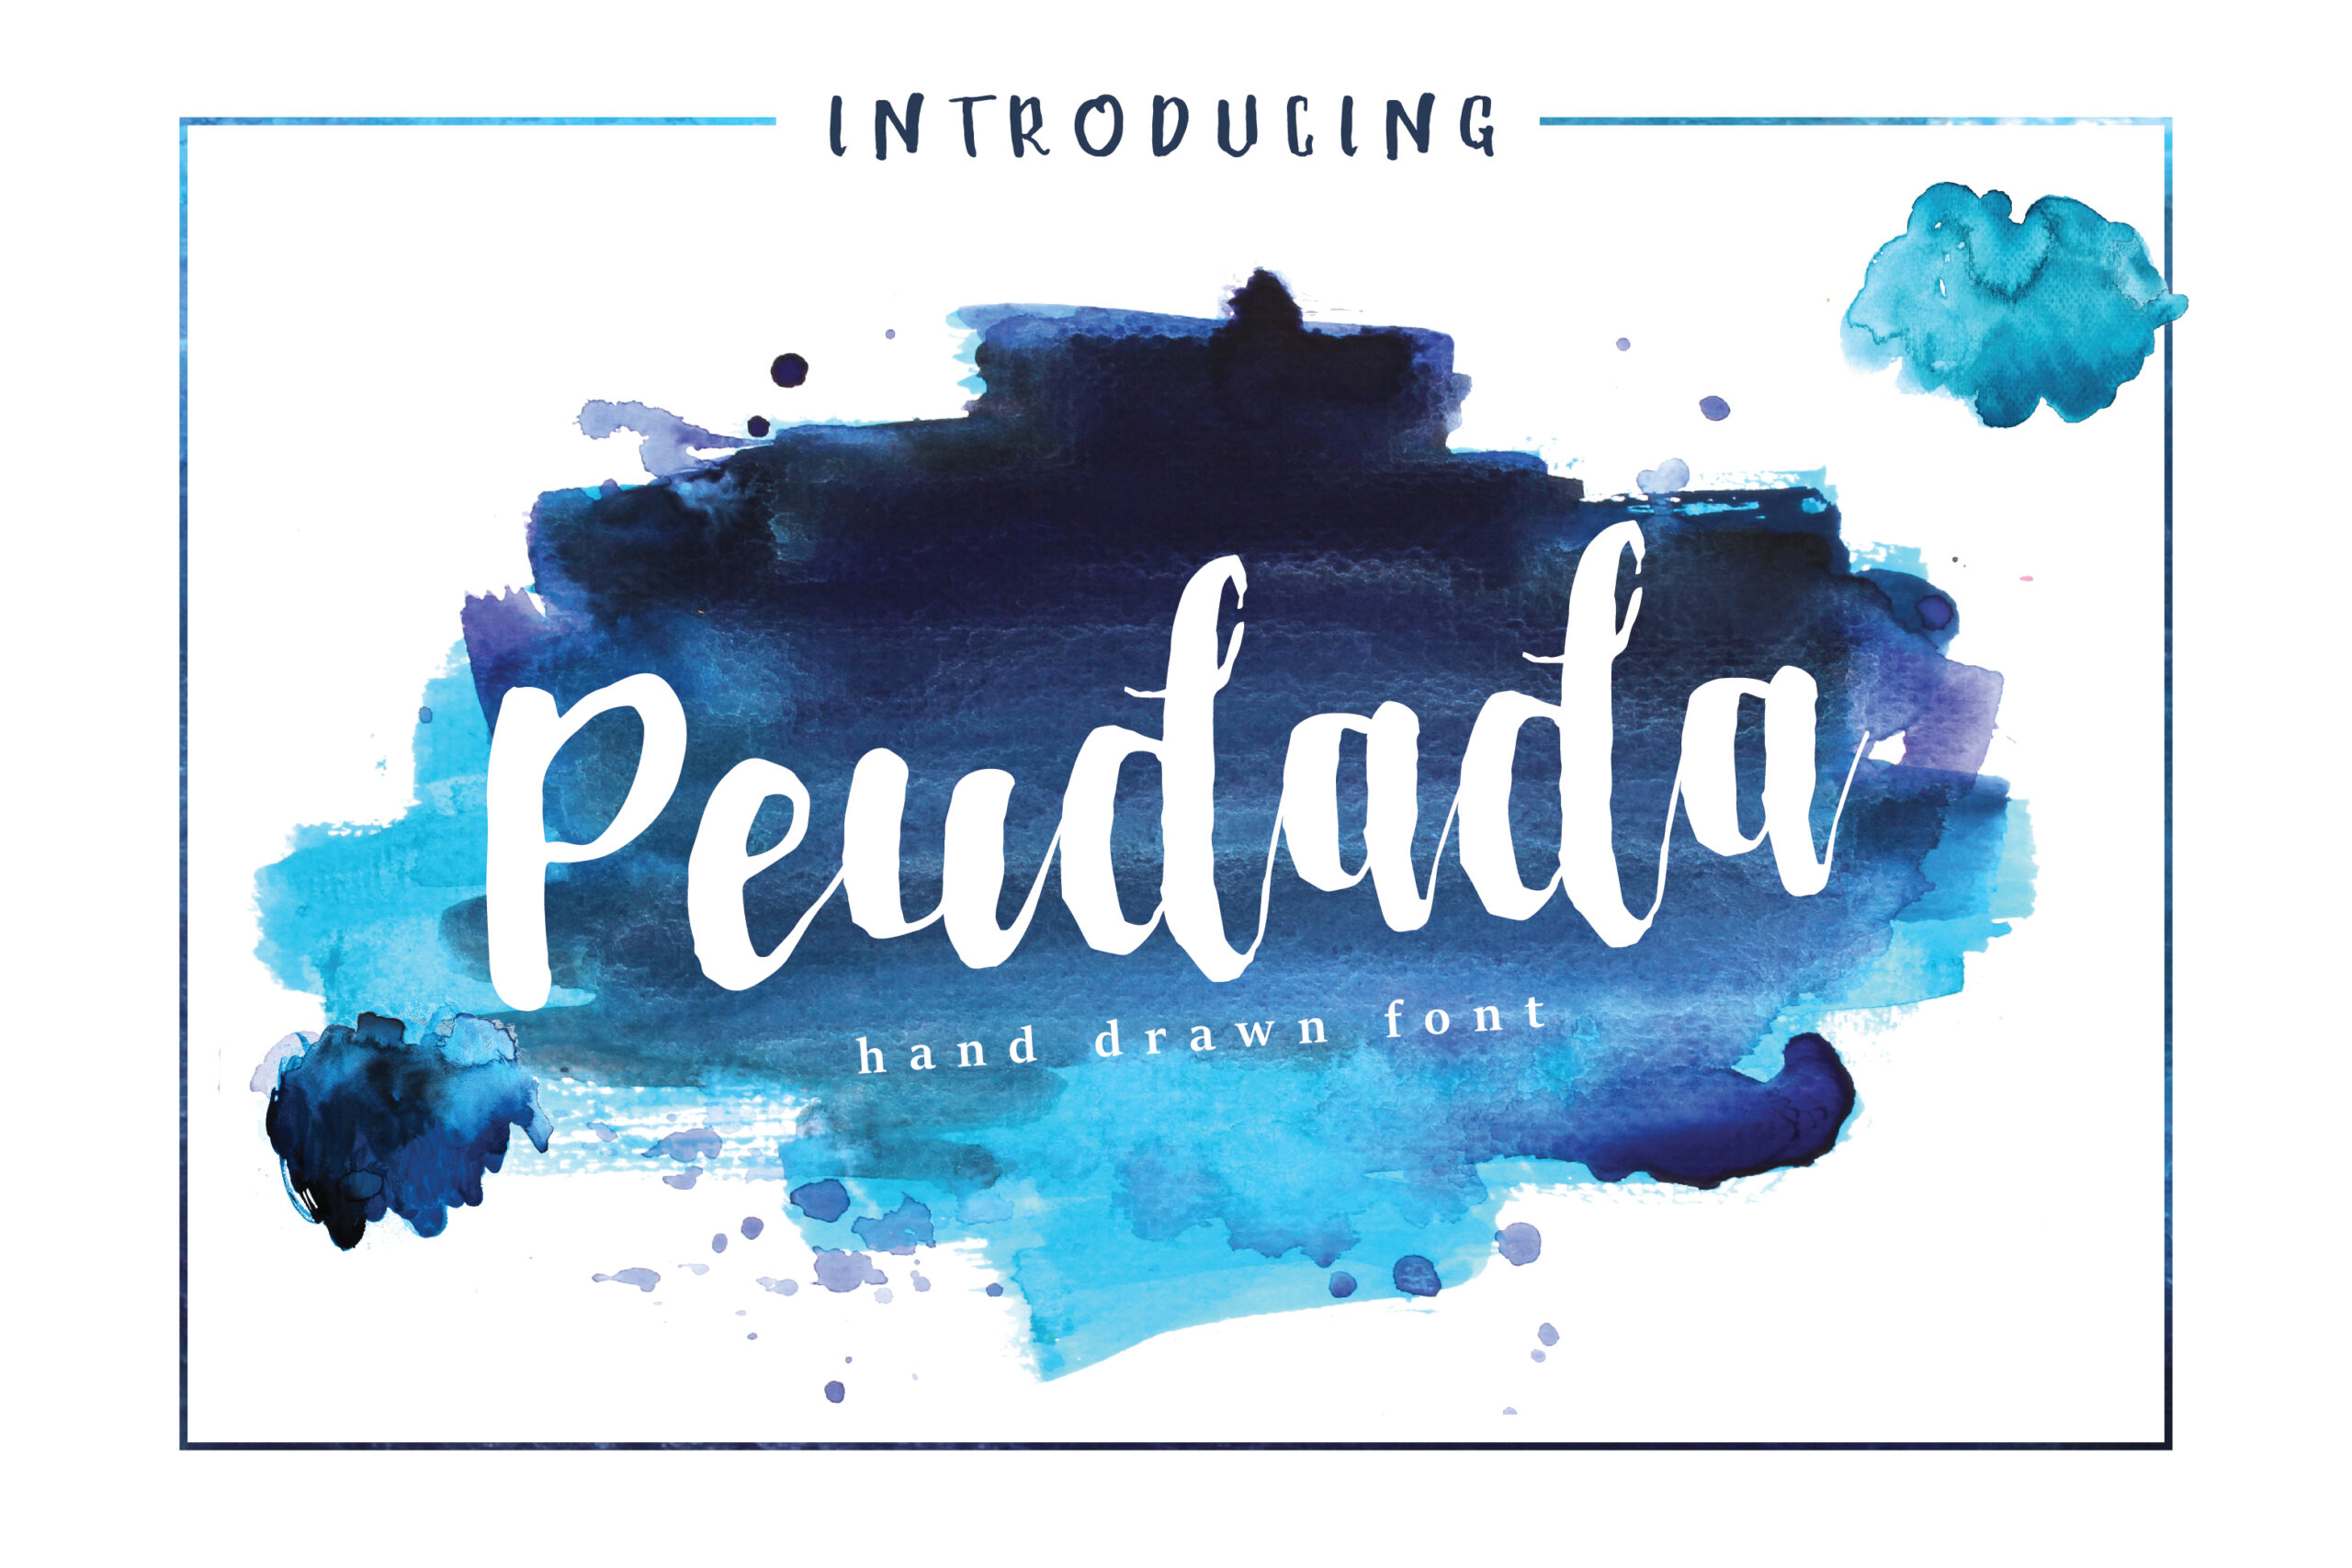 Peudada Font